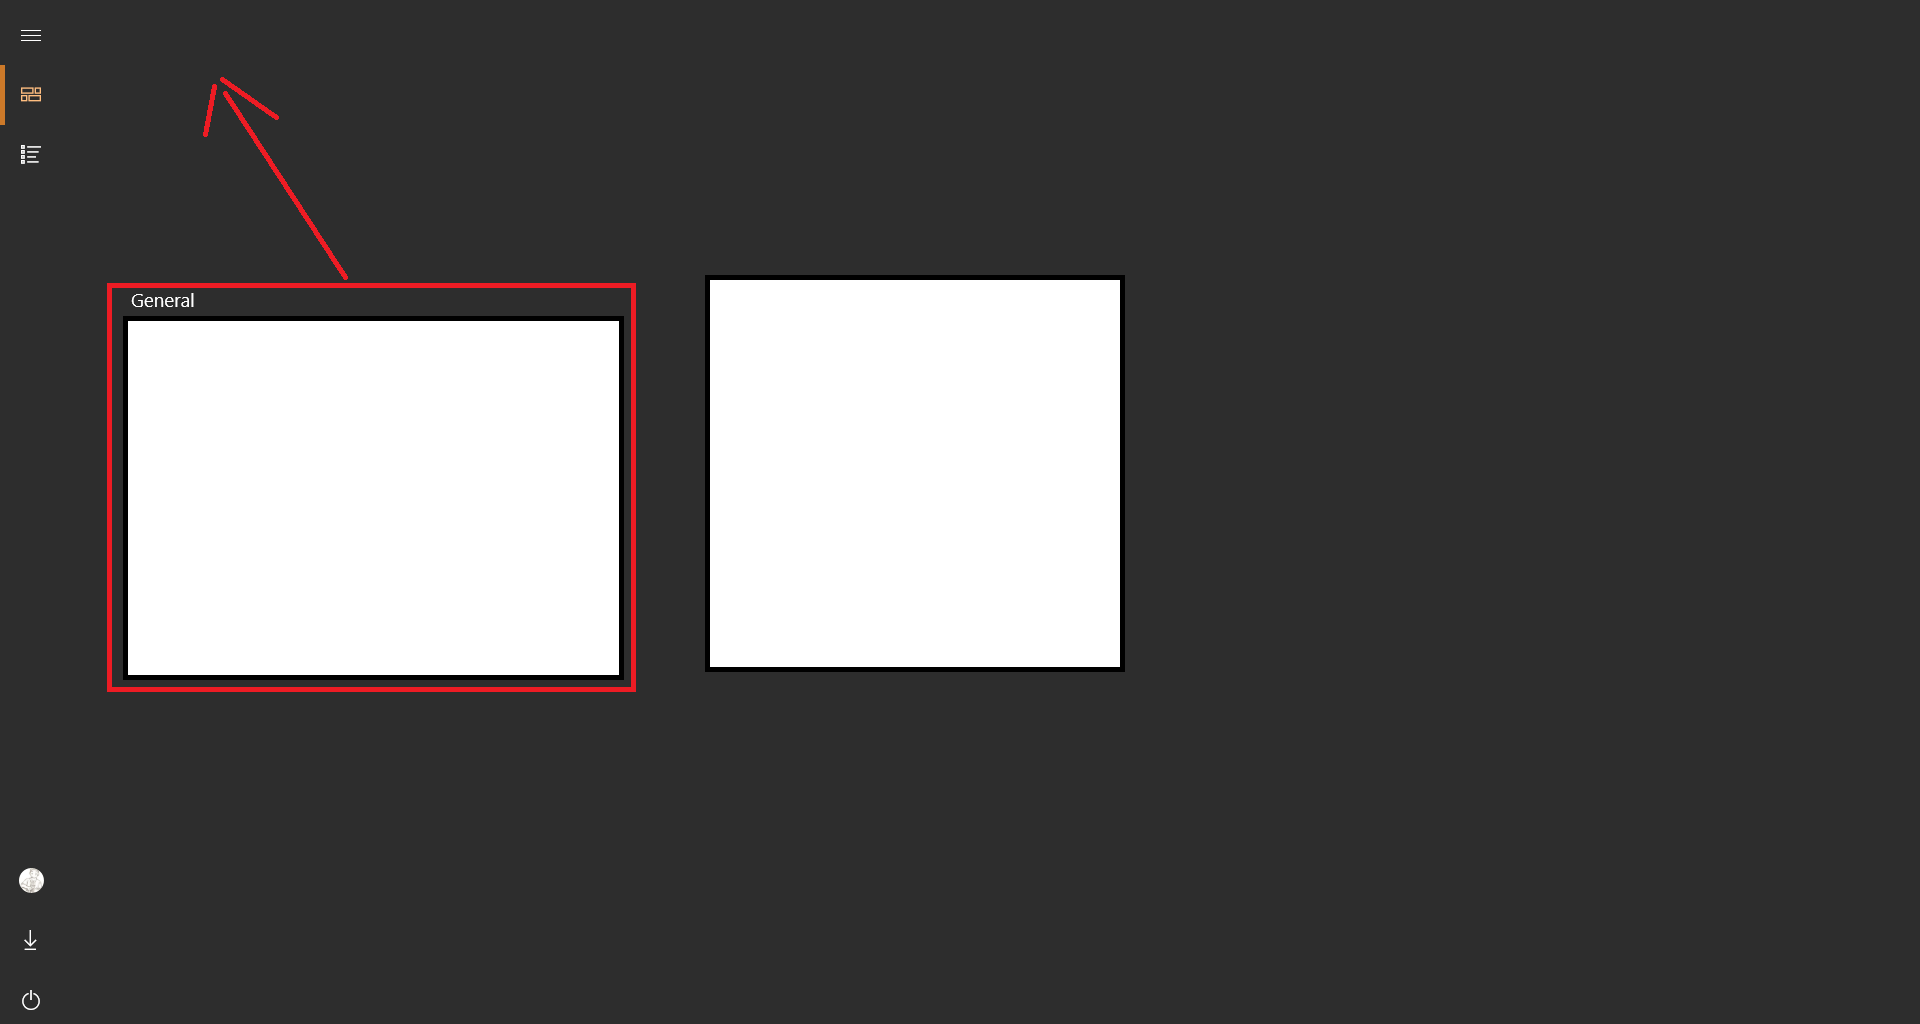 Windows 10 start menu tile group cannot arrange to top left of the start panel 6d6e5abd-e03d-4333-b831-5d1908ad77b6?upload=true.png